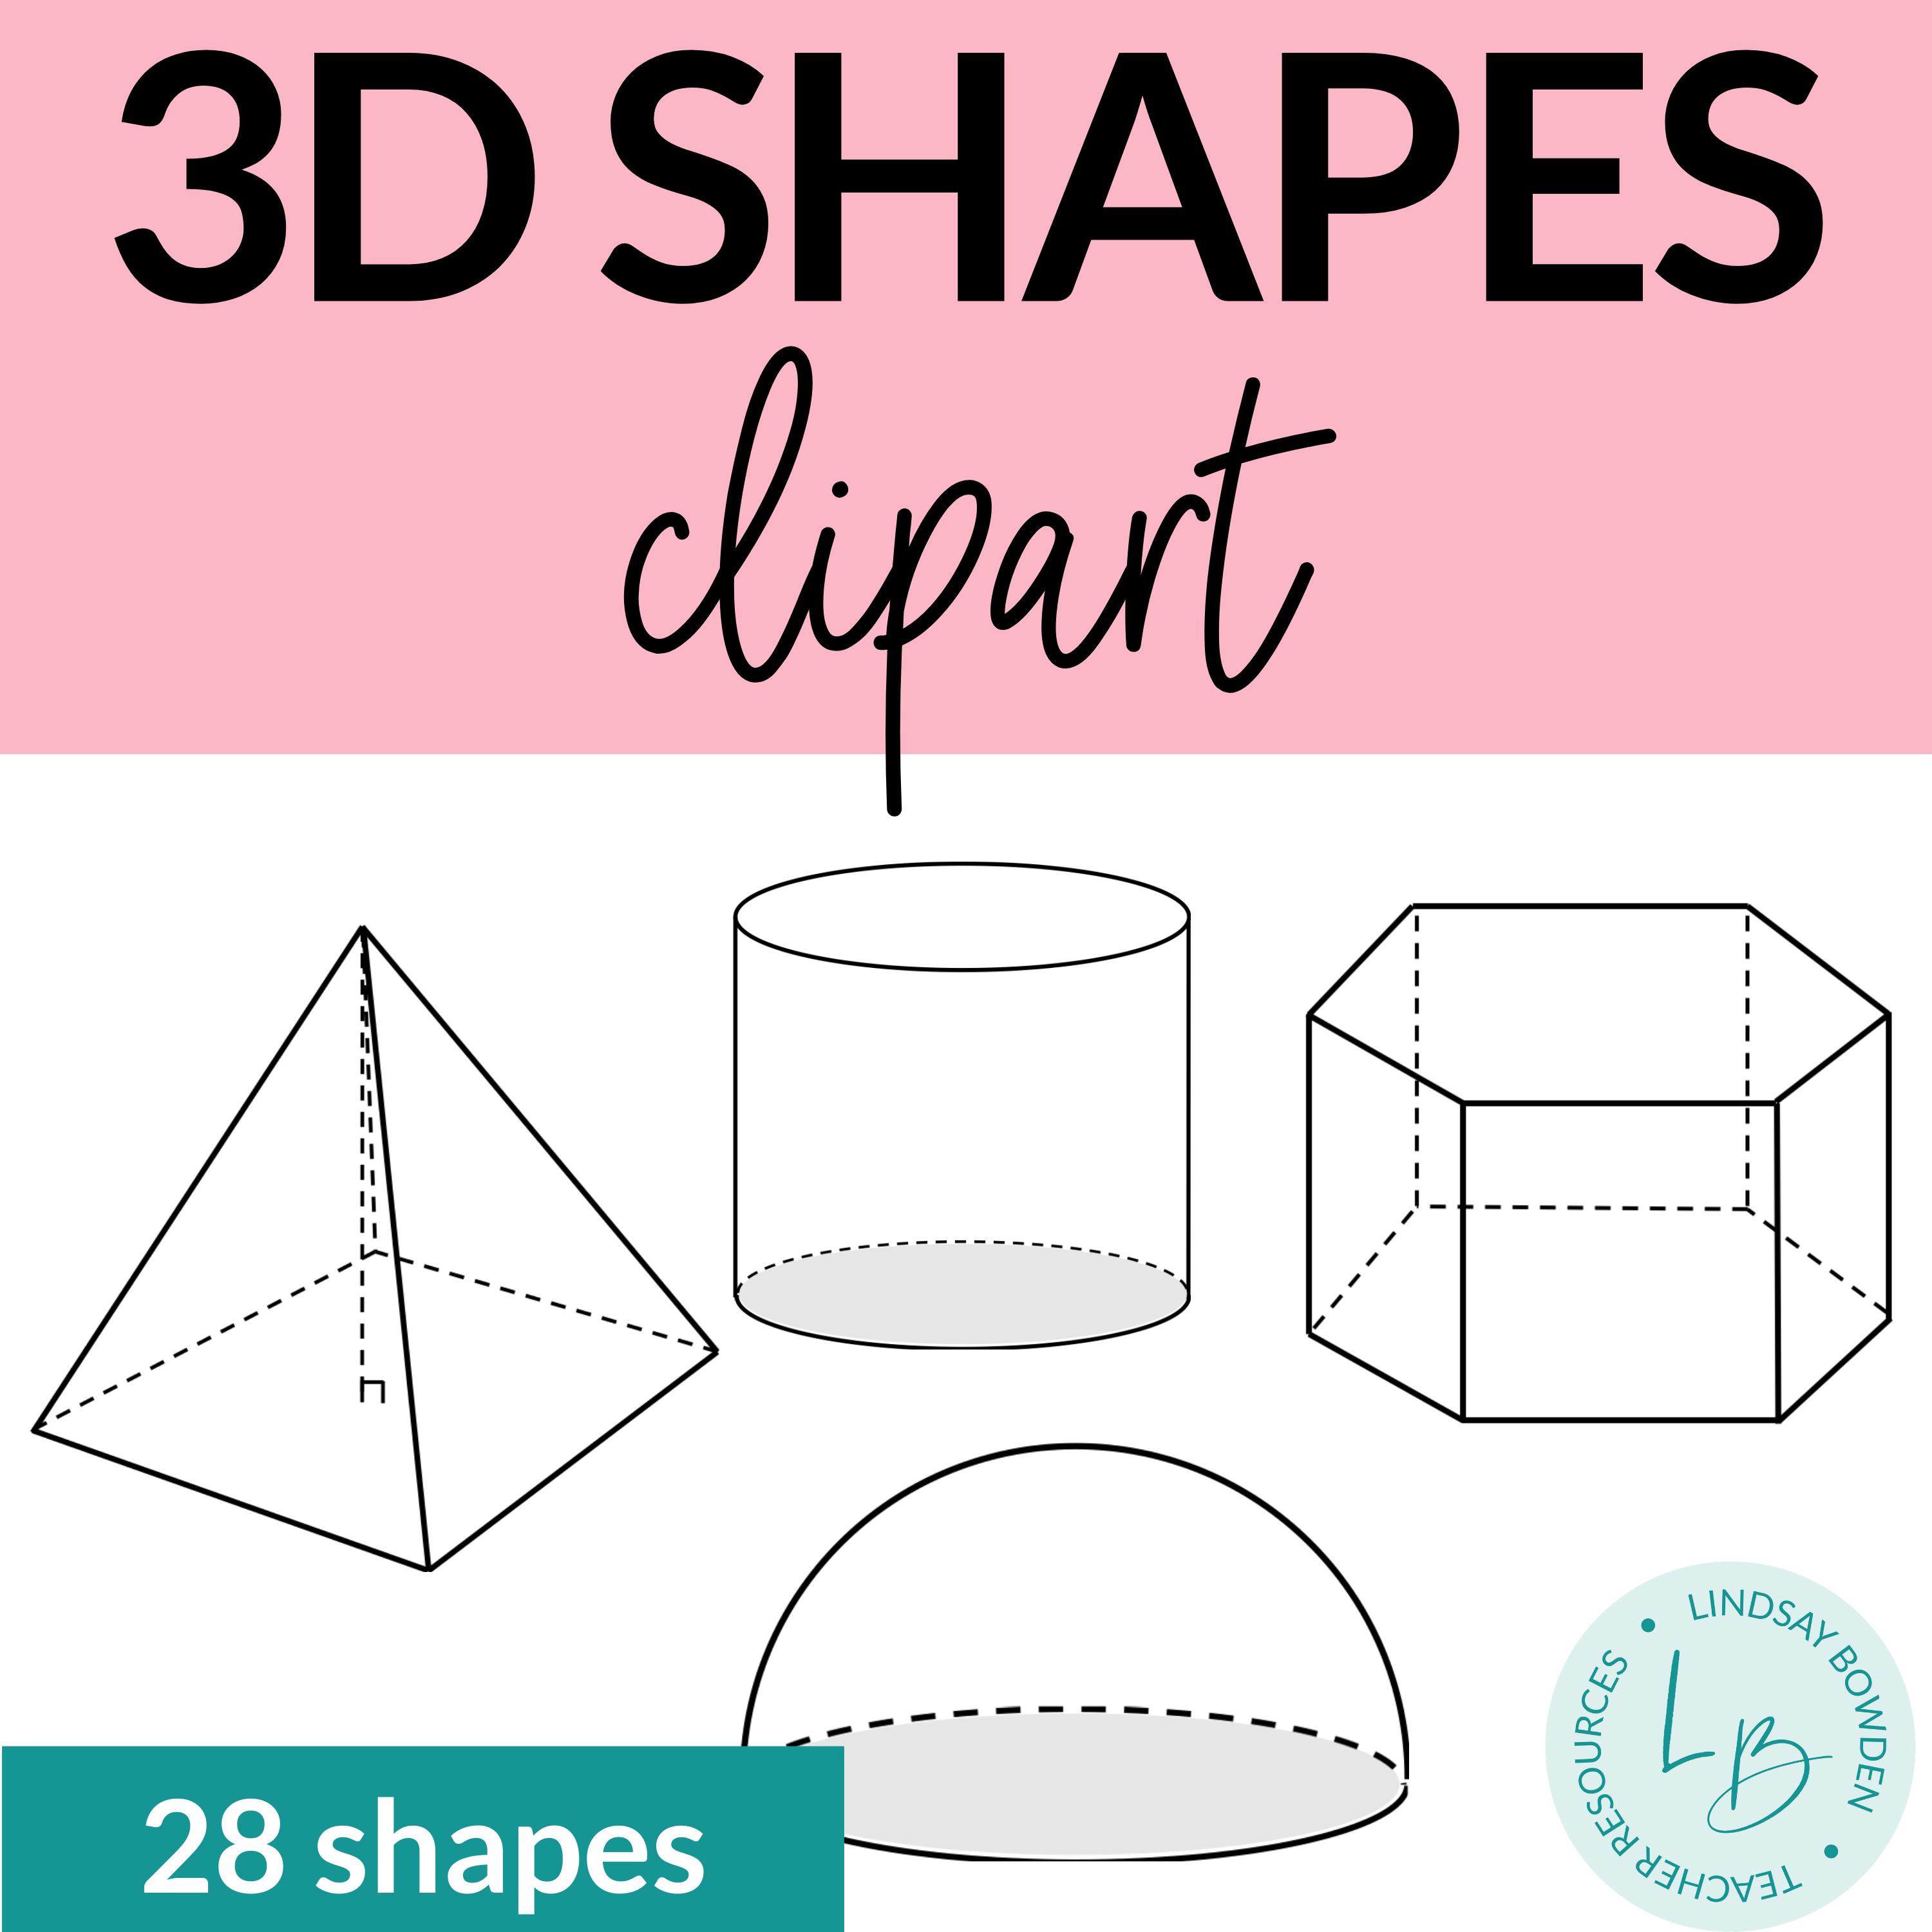 3D Shapes Clipart - Lindsay Bowden